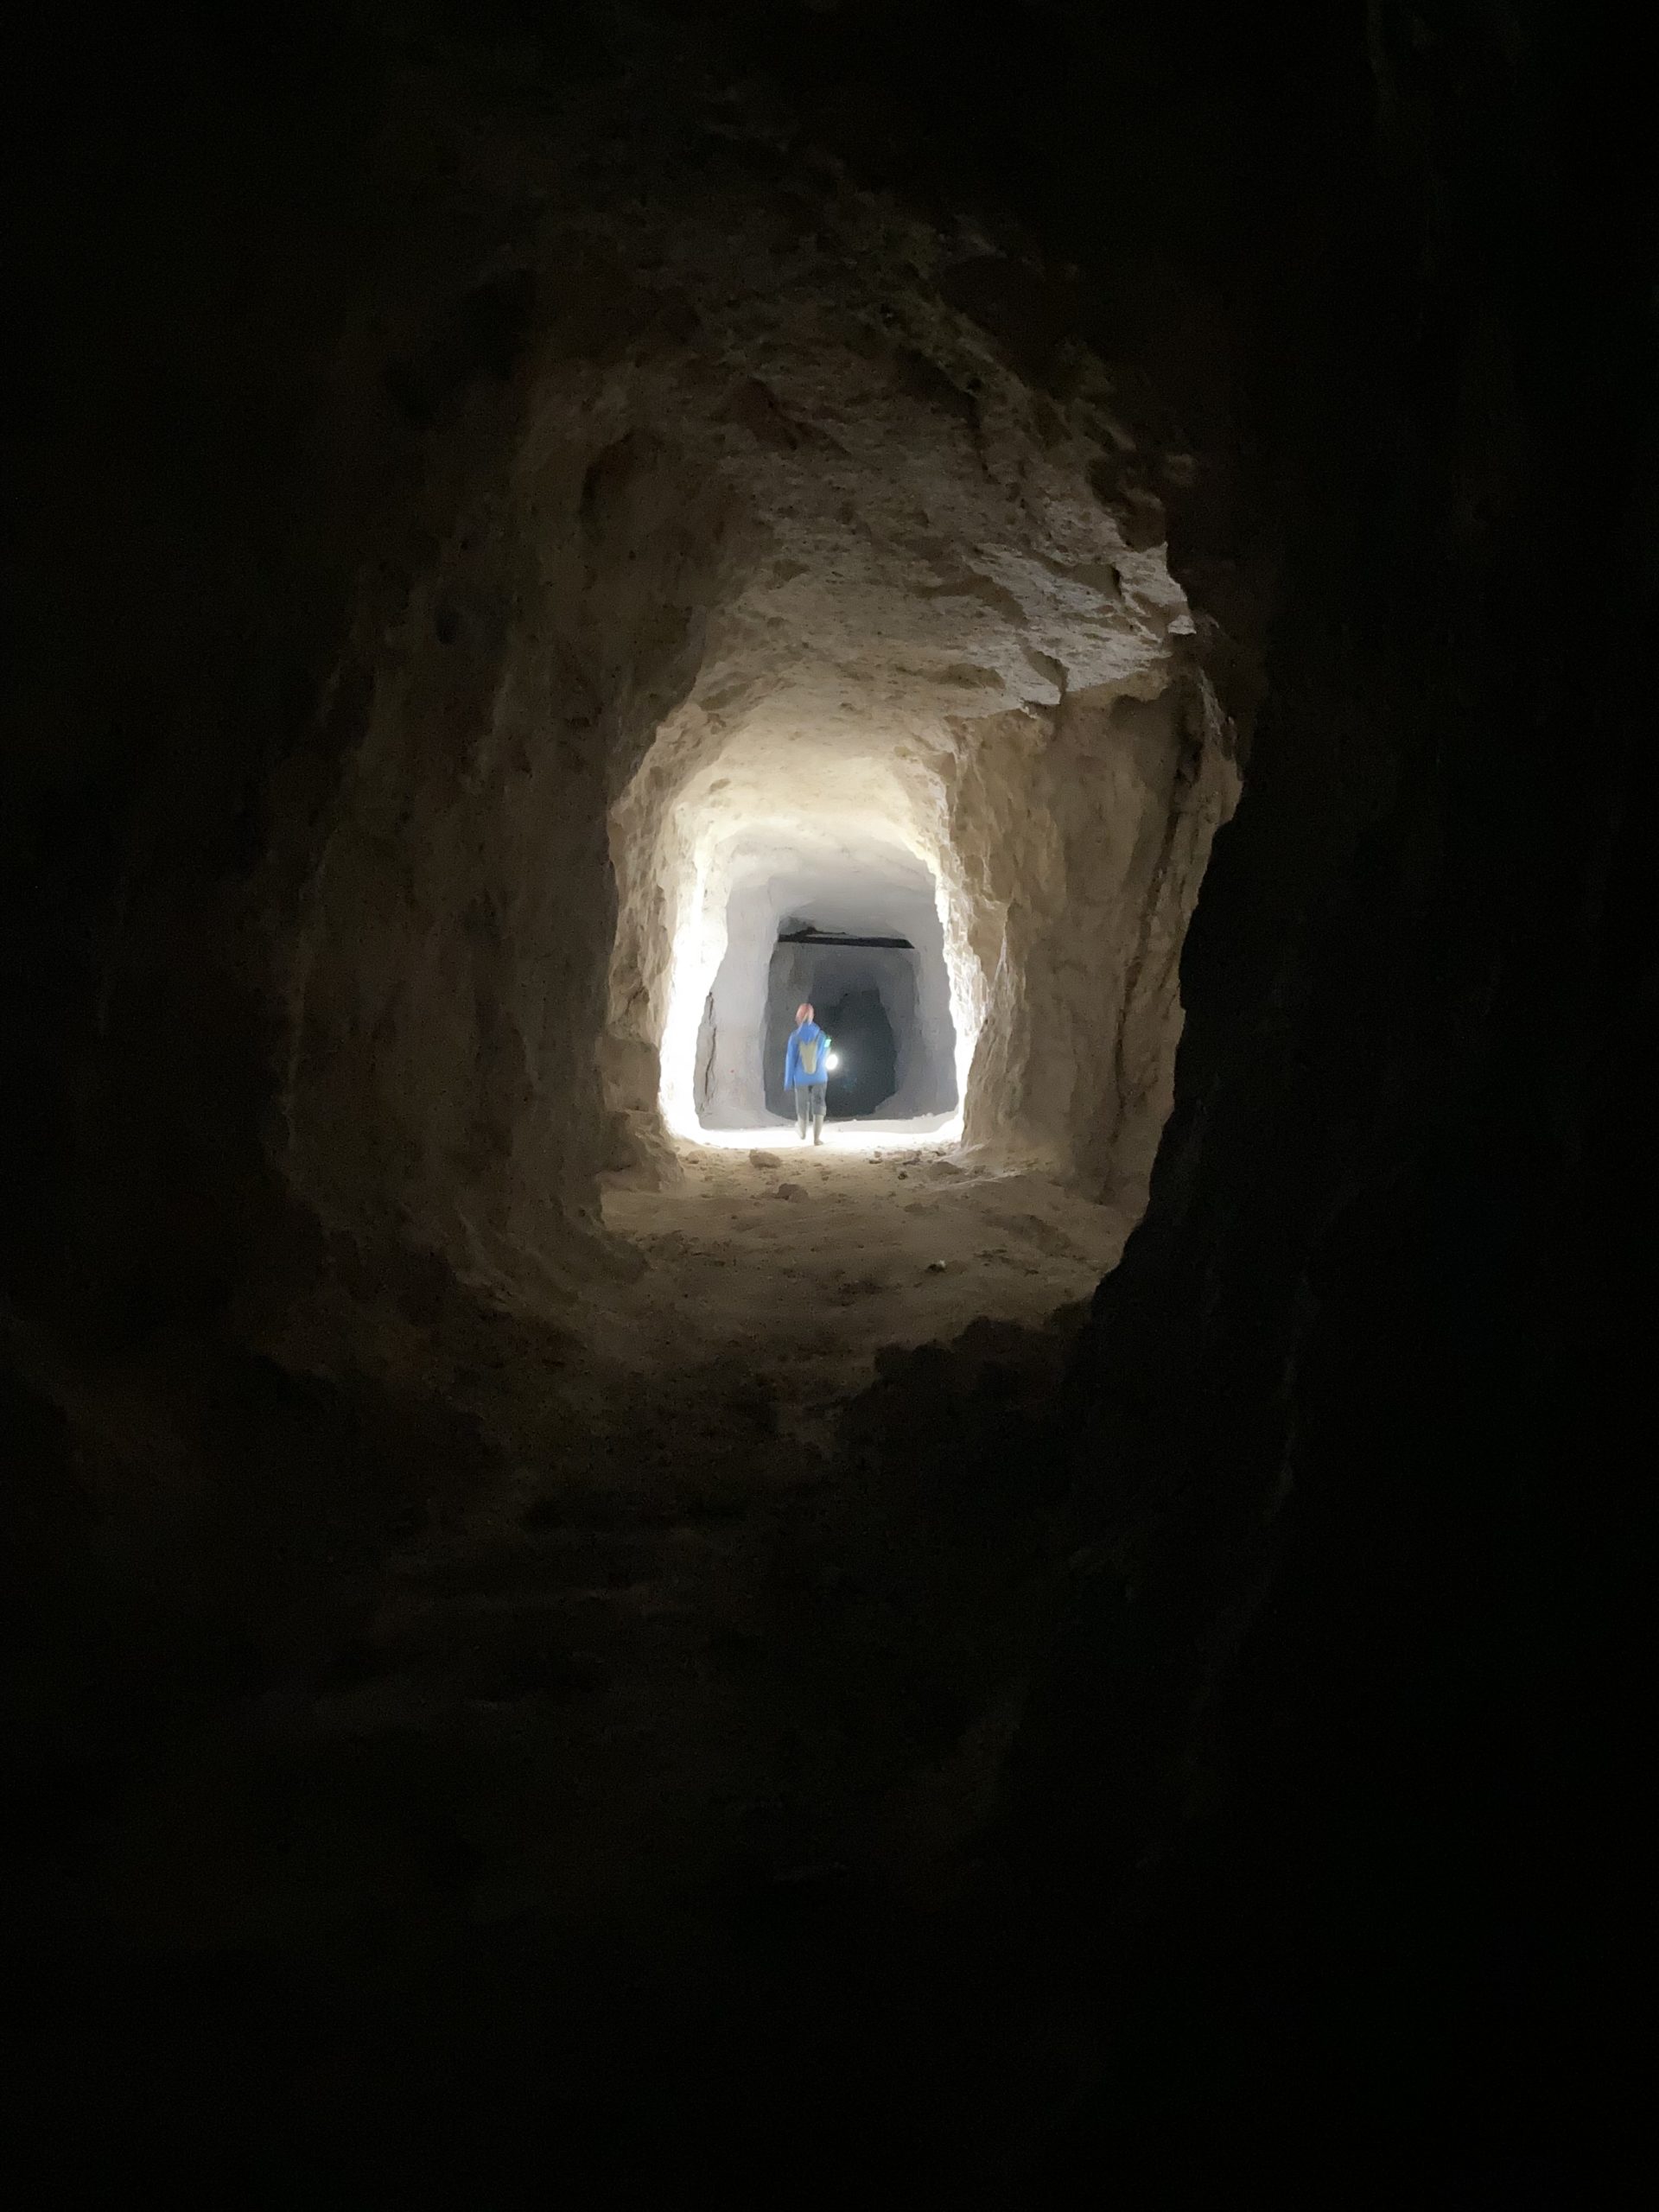 Une vue en contre-plongée d'un puits de lumière dans un tunnel souterrain, éclairant faiblement les parois rugueuses et offrant un aperçu d'une personne.